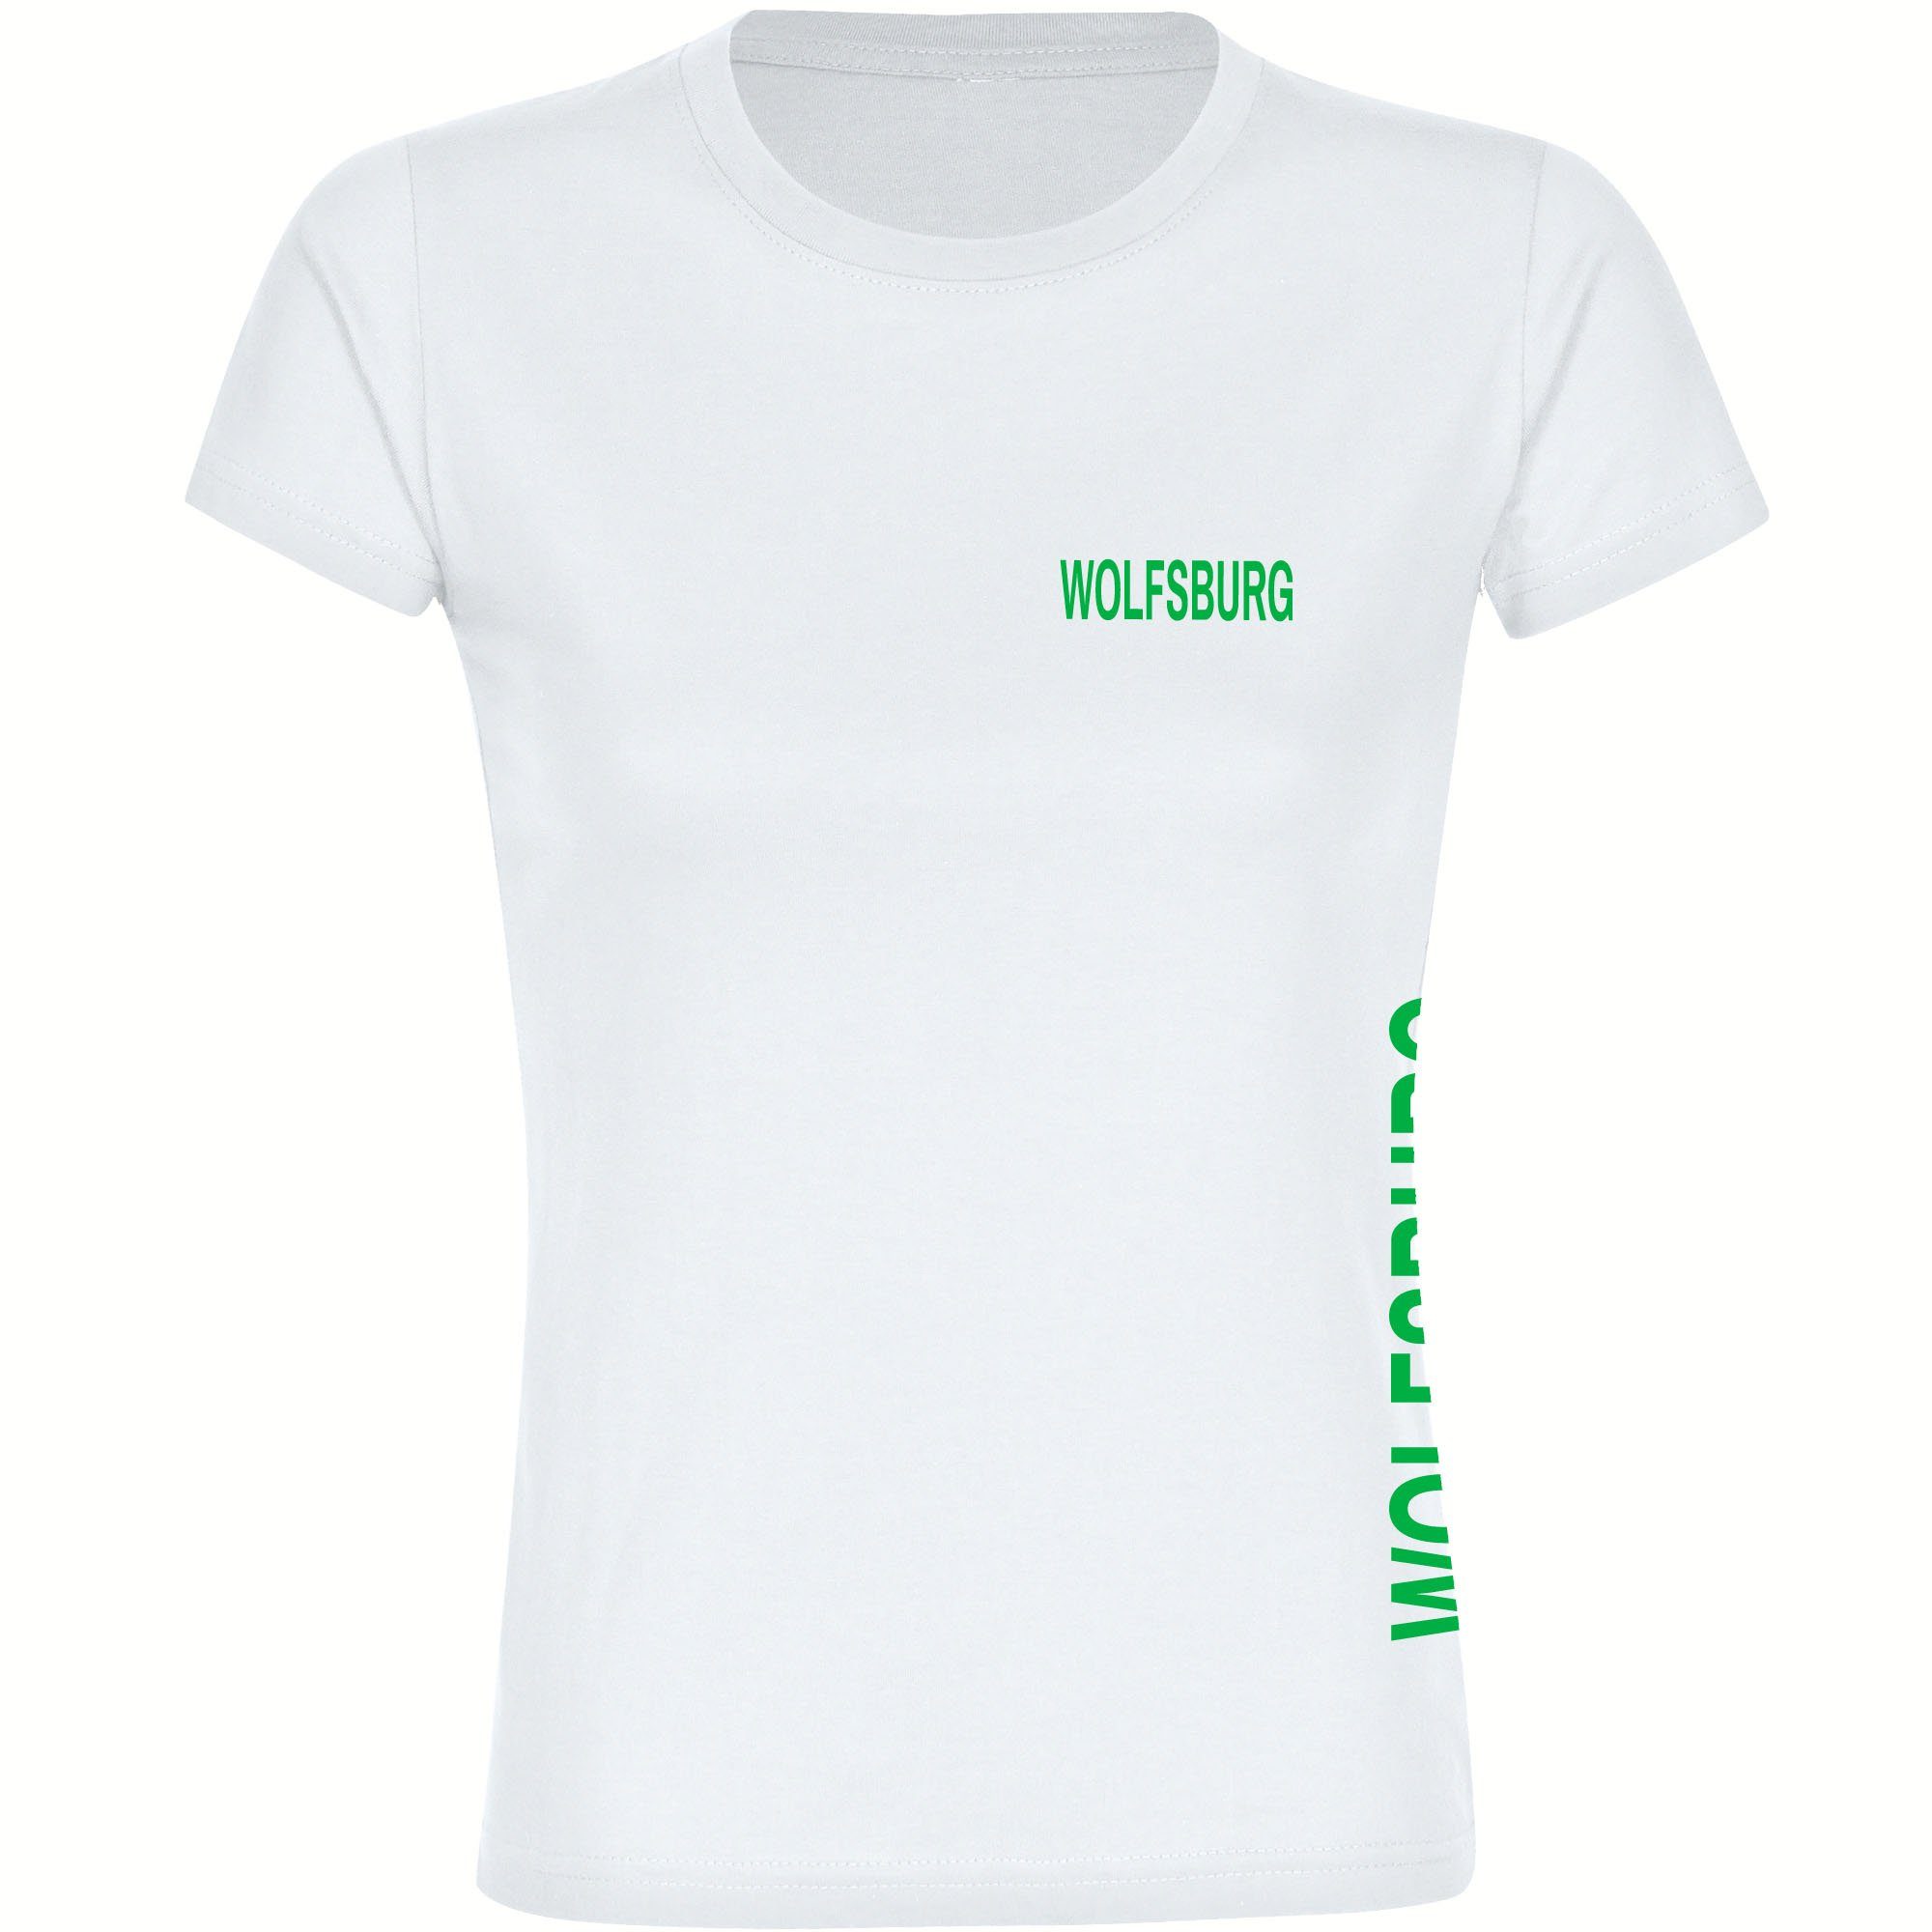 multifanshop T-Shirt Damen Wolfsburg - Brust & Seite - Frauen